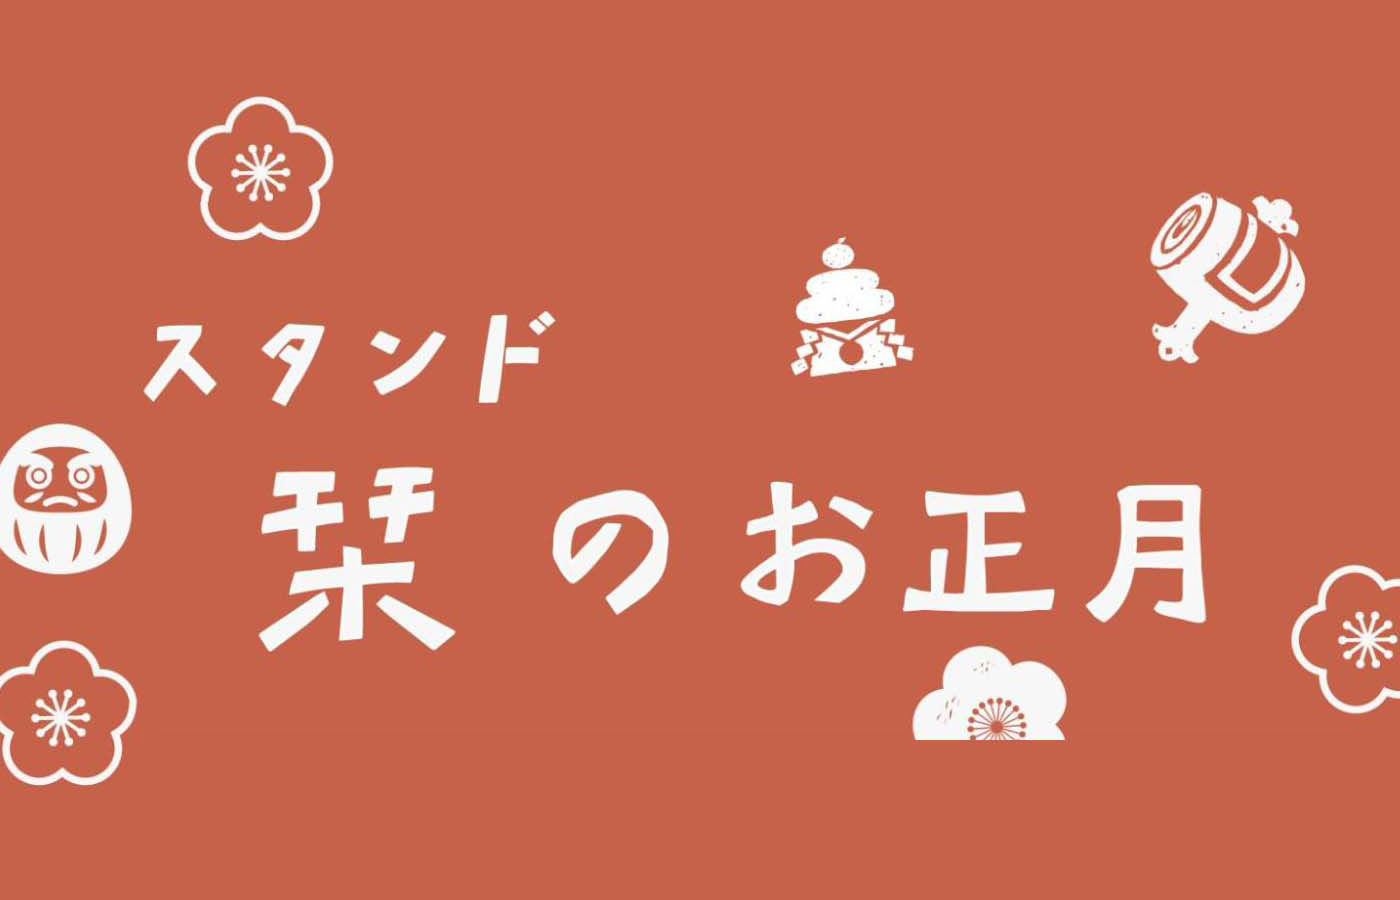 新春イベント「スタンド栞のお正月」を2022年1月2日(日)から開催